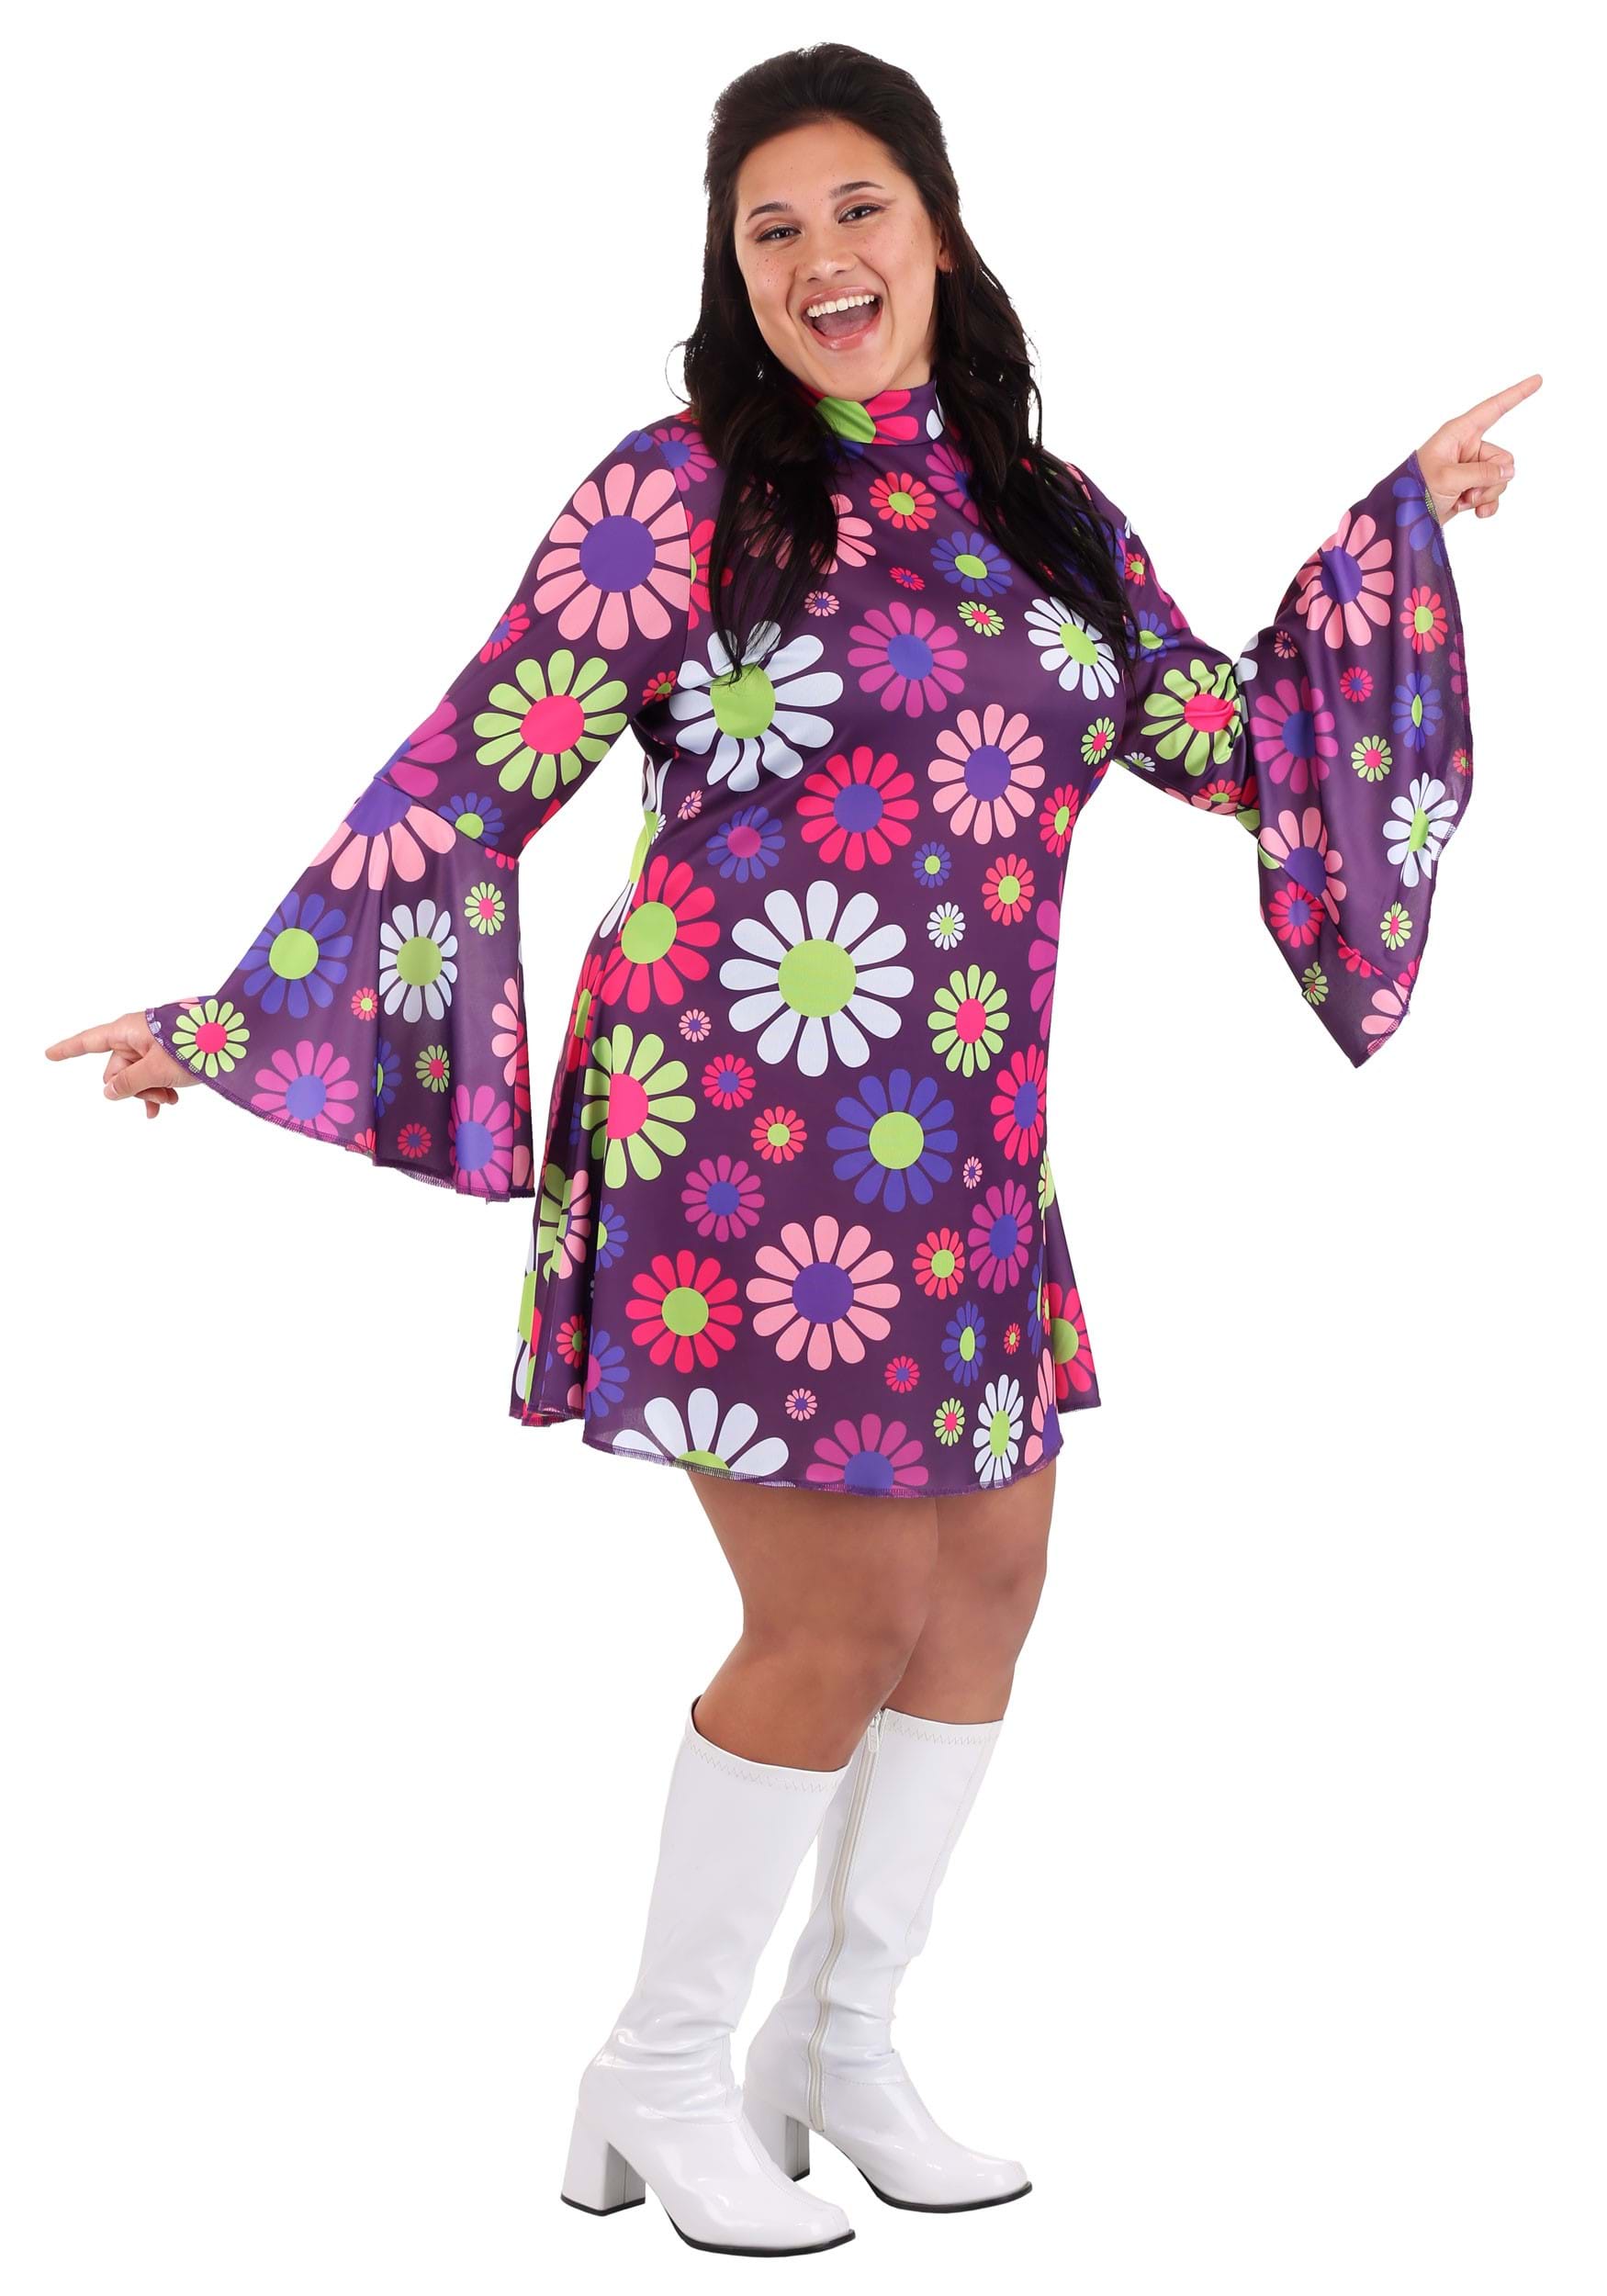 Plus Size Groovy Flower Power Women's Fancy Dress Costume